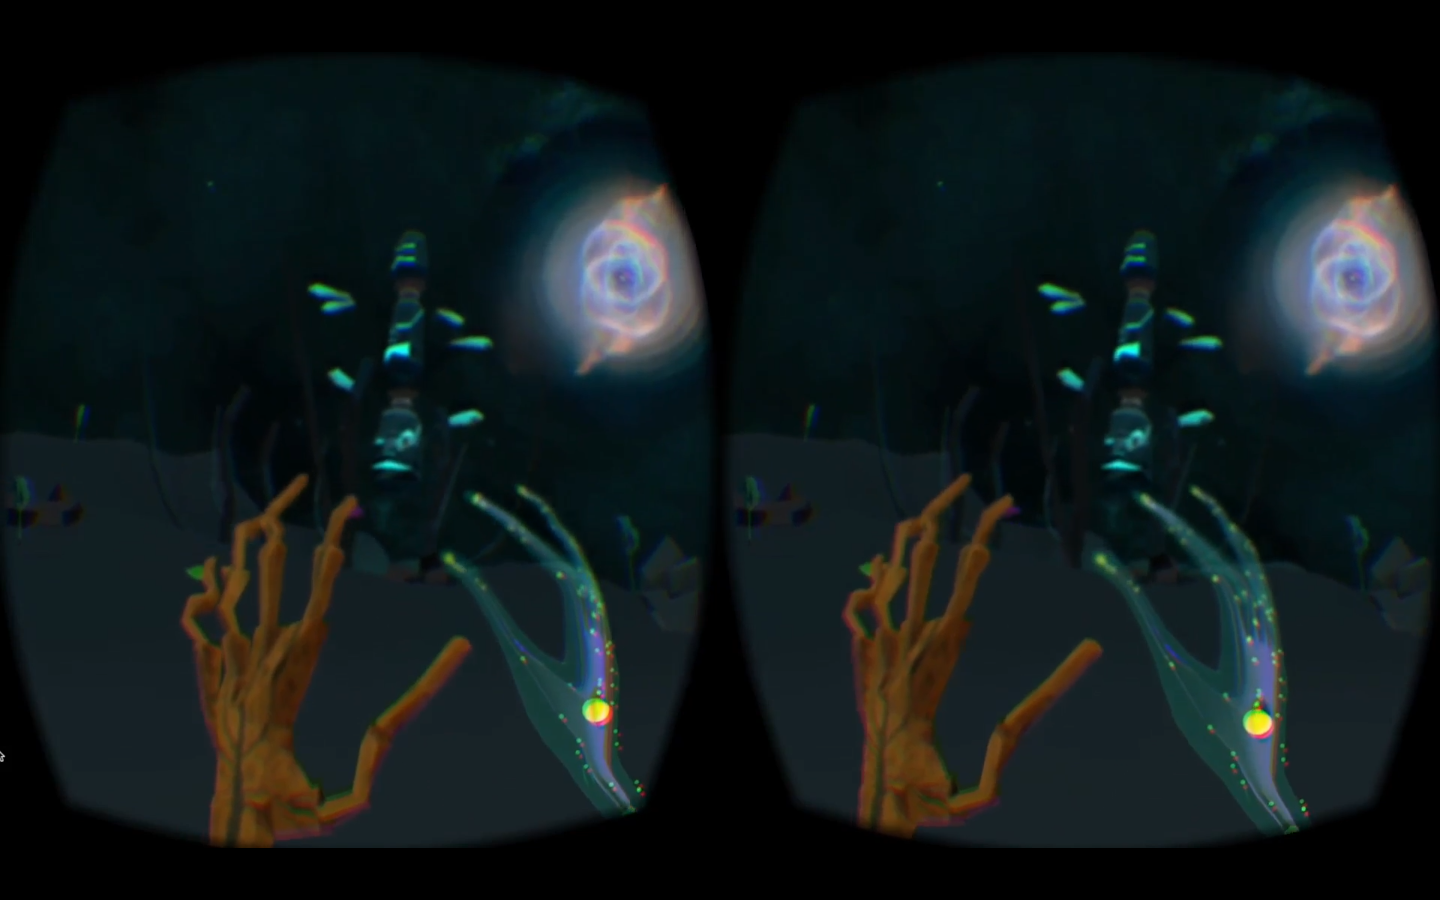 It's Strange - Meditative VR Experience